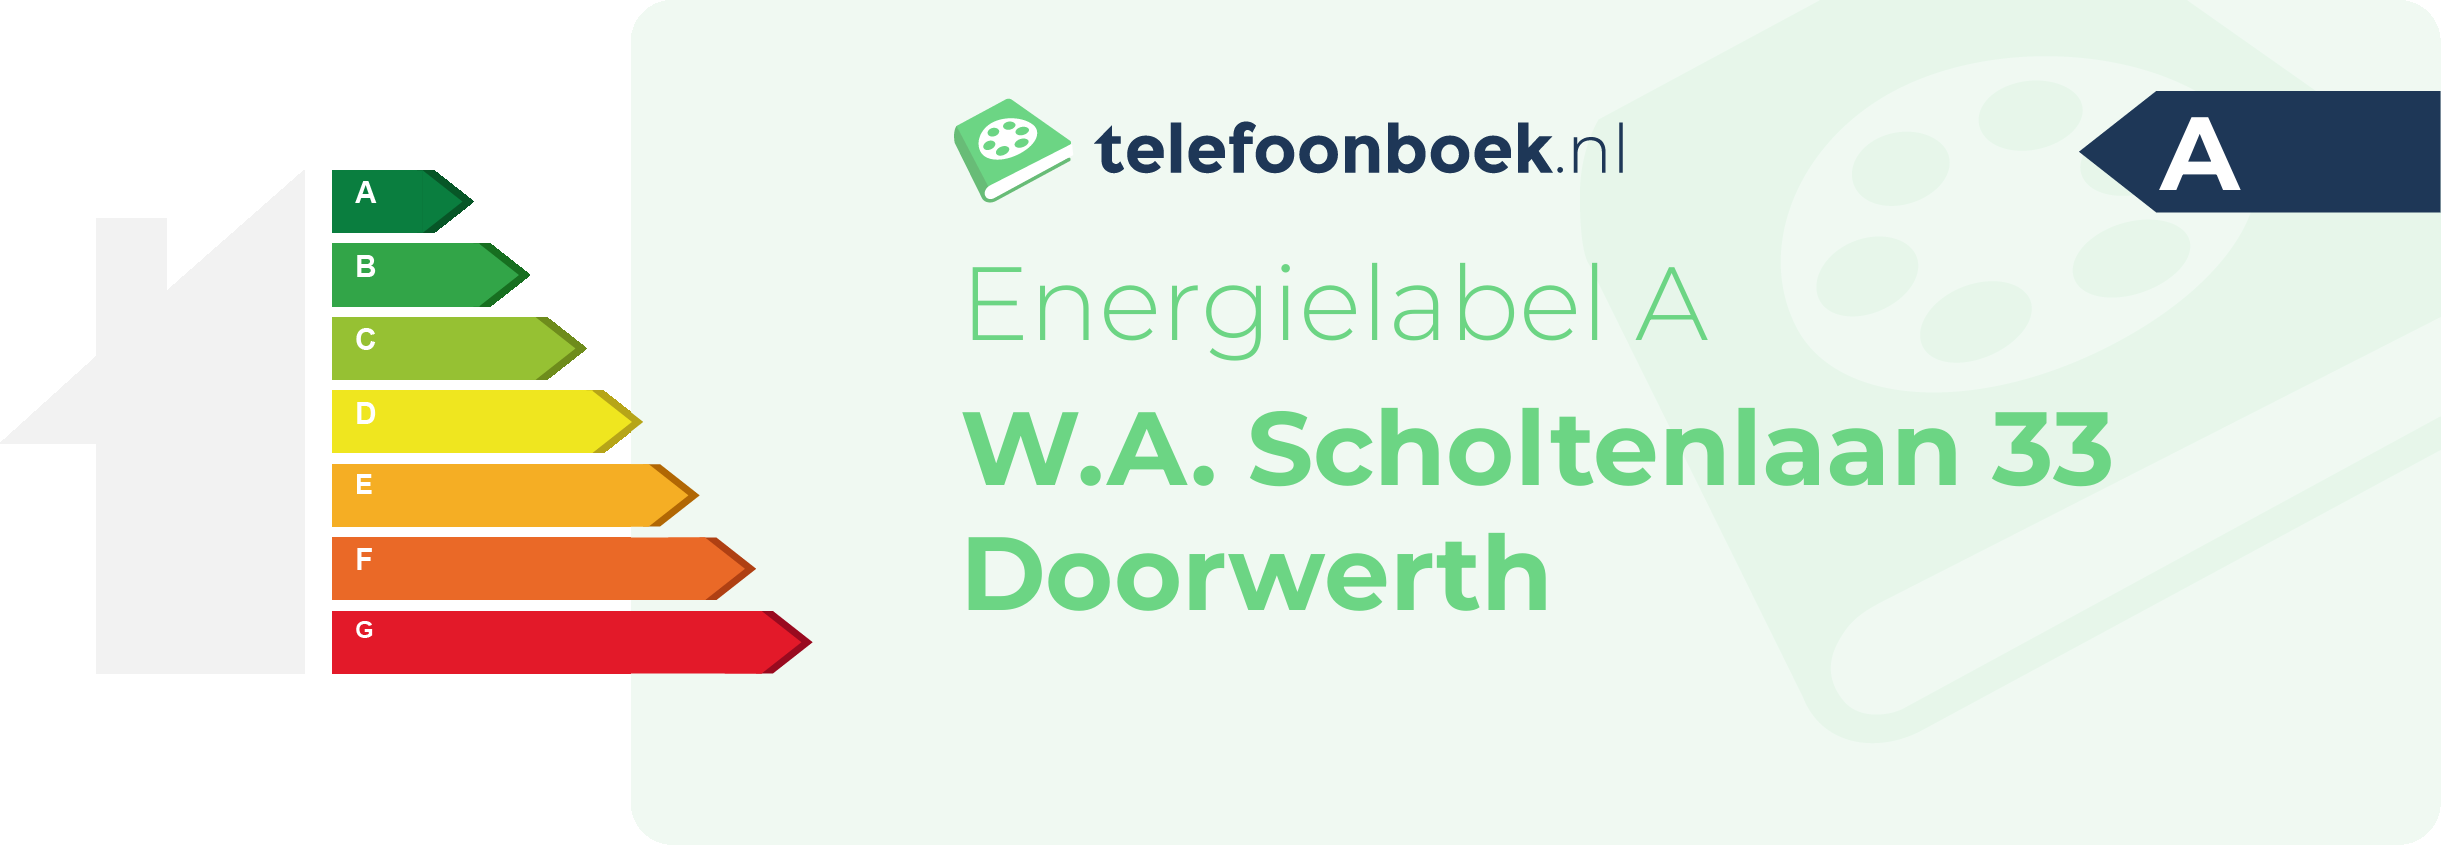 Energielabel W.A. Scholtenlaan 33 Doorwerth